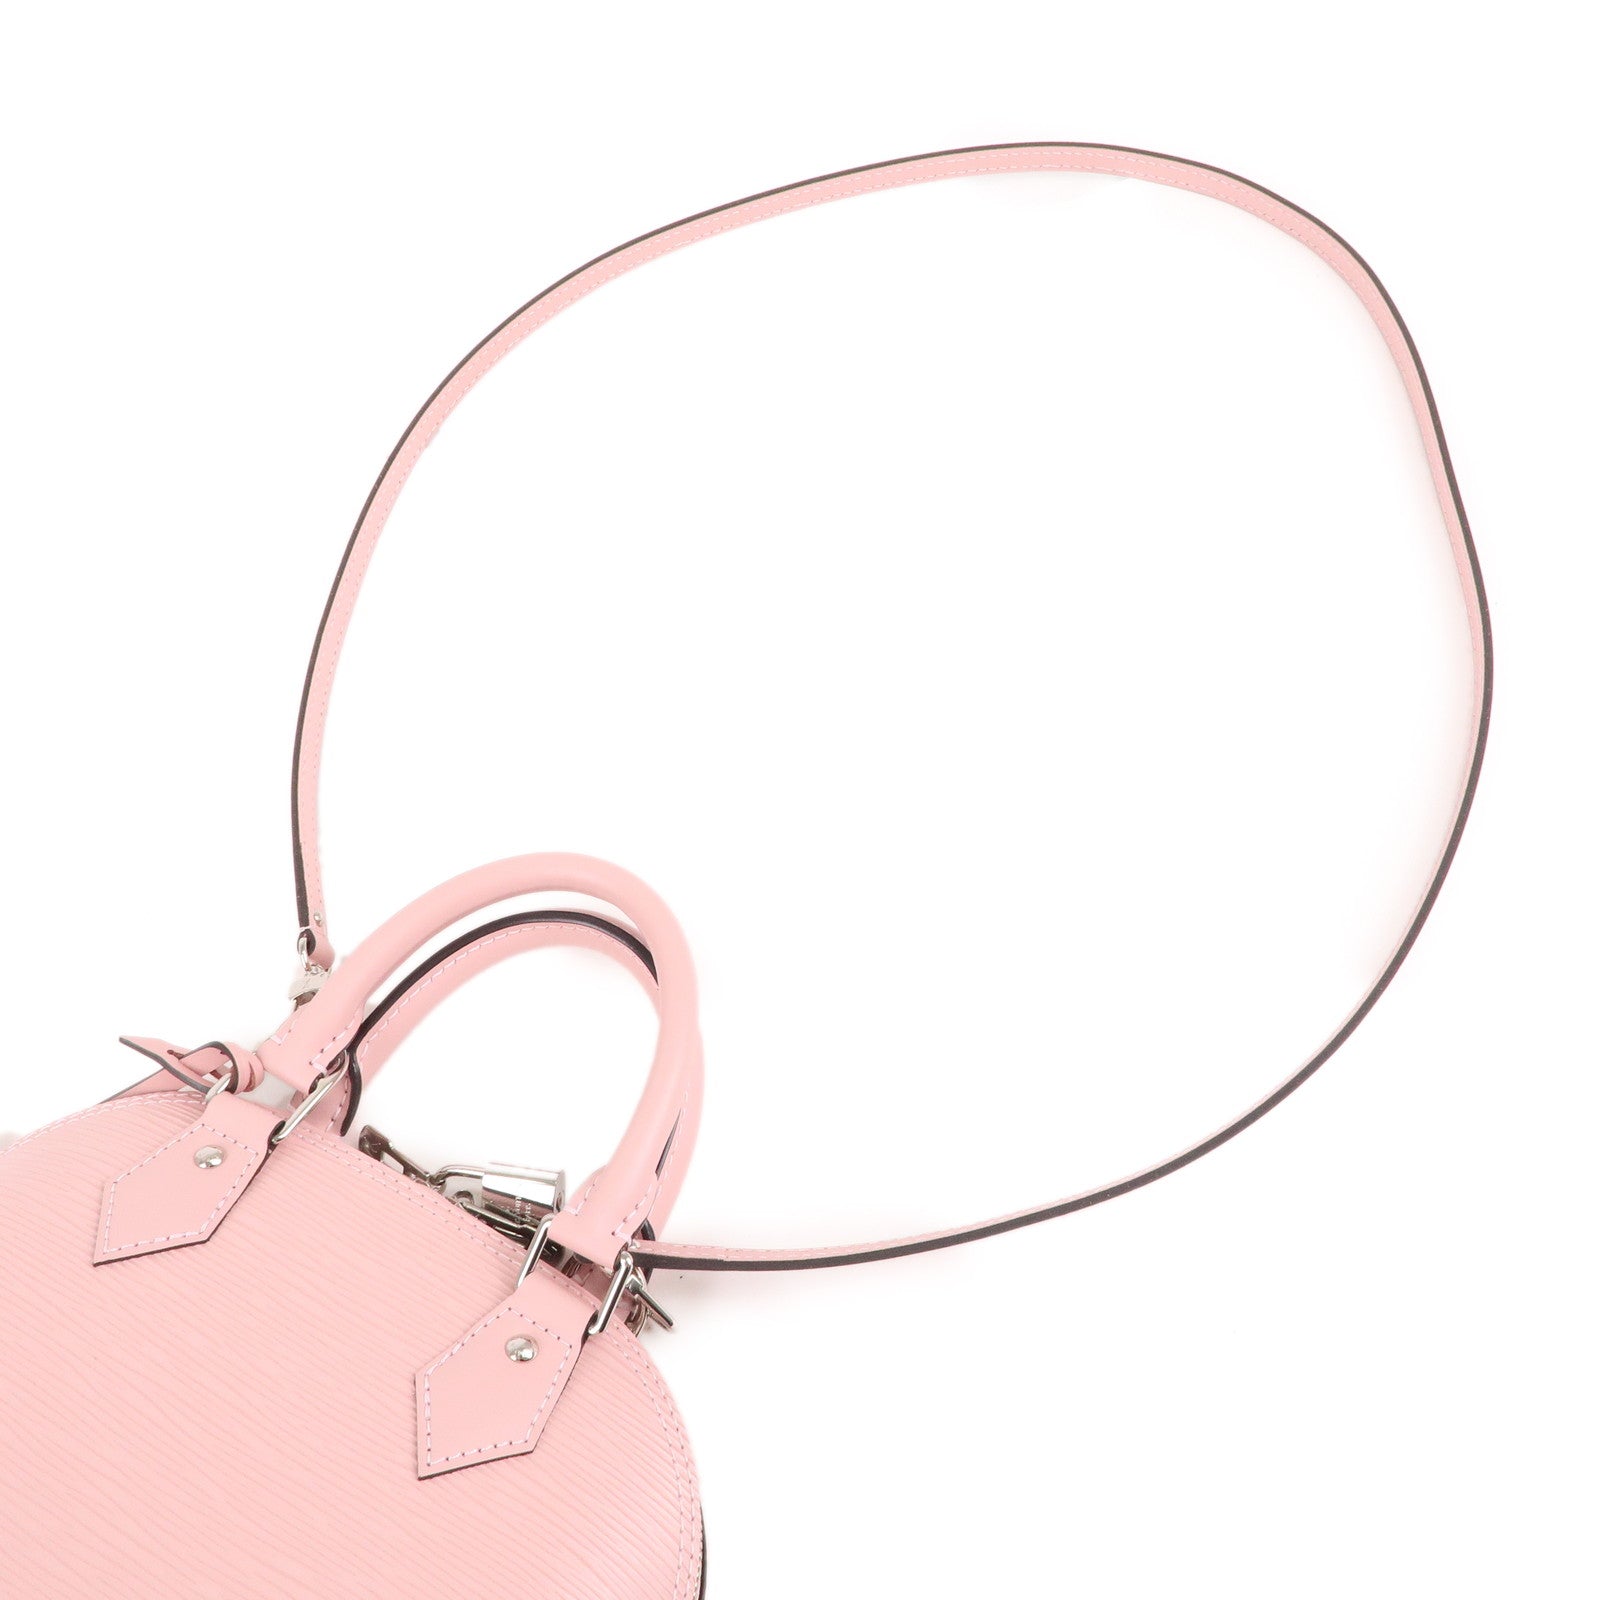 Louis Vuitton Rose Ballerine Bags  Bags, Top designer bags, Bags